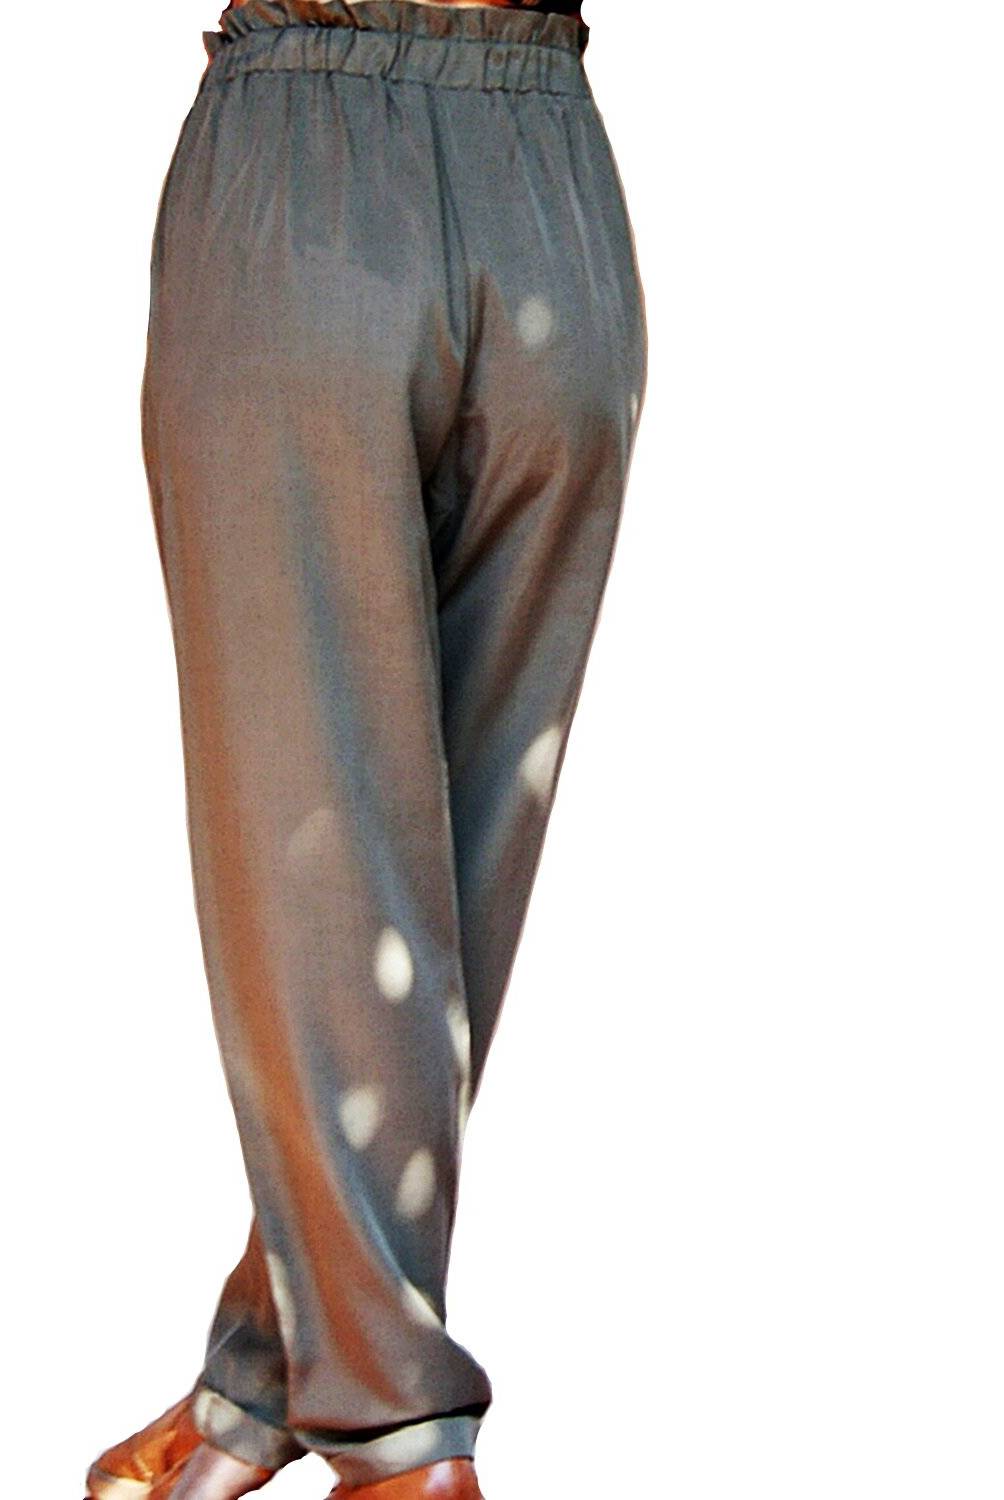 VIVAFELICIA - Pantalón De Algodón Mujer